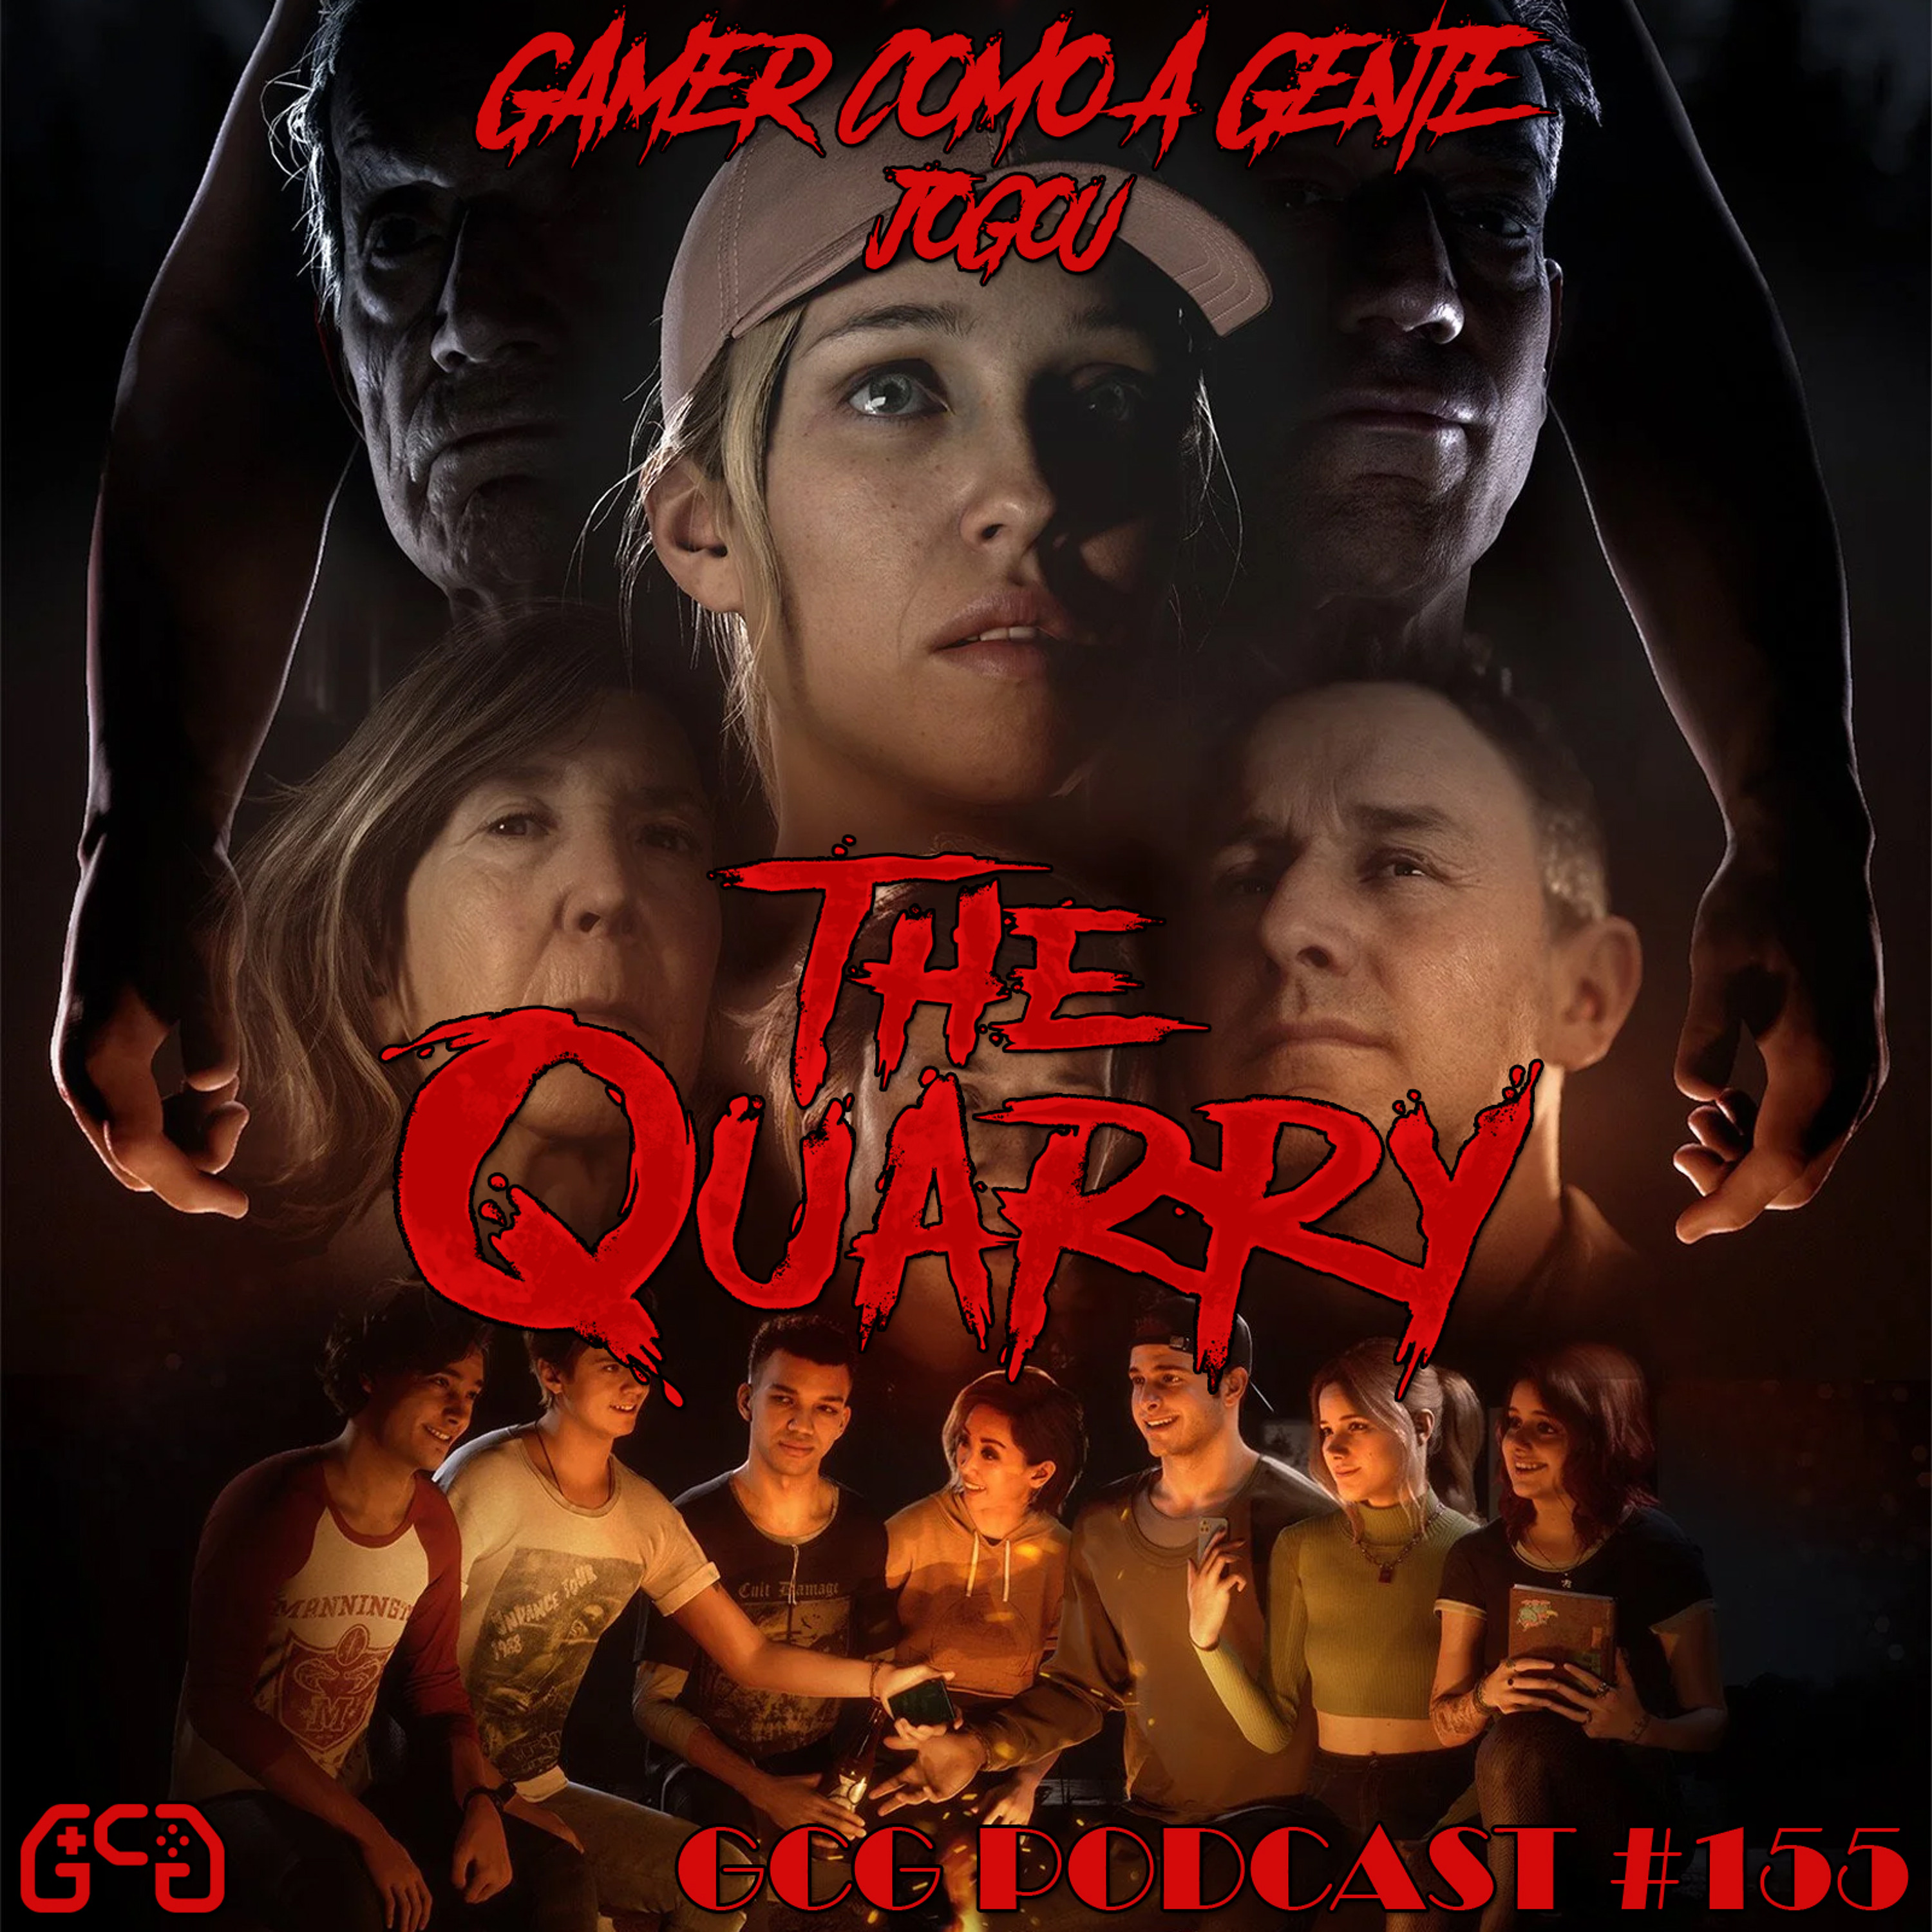 GCG Podcast #155 - The Quarry